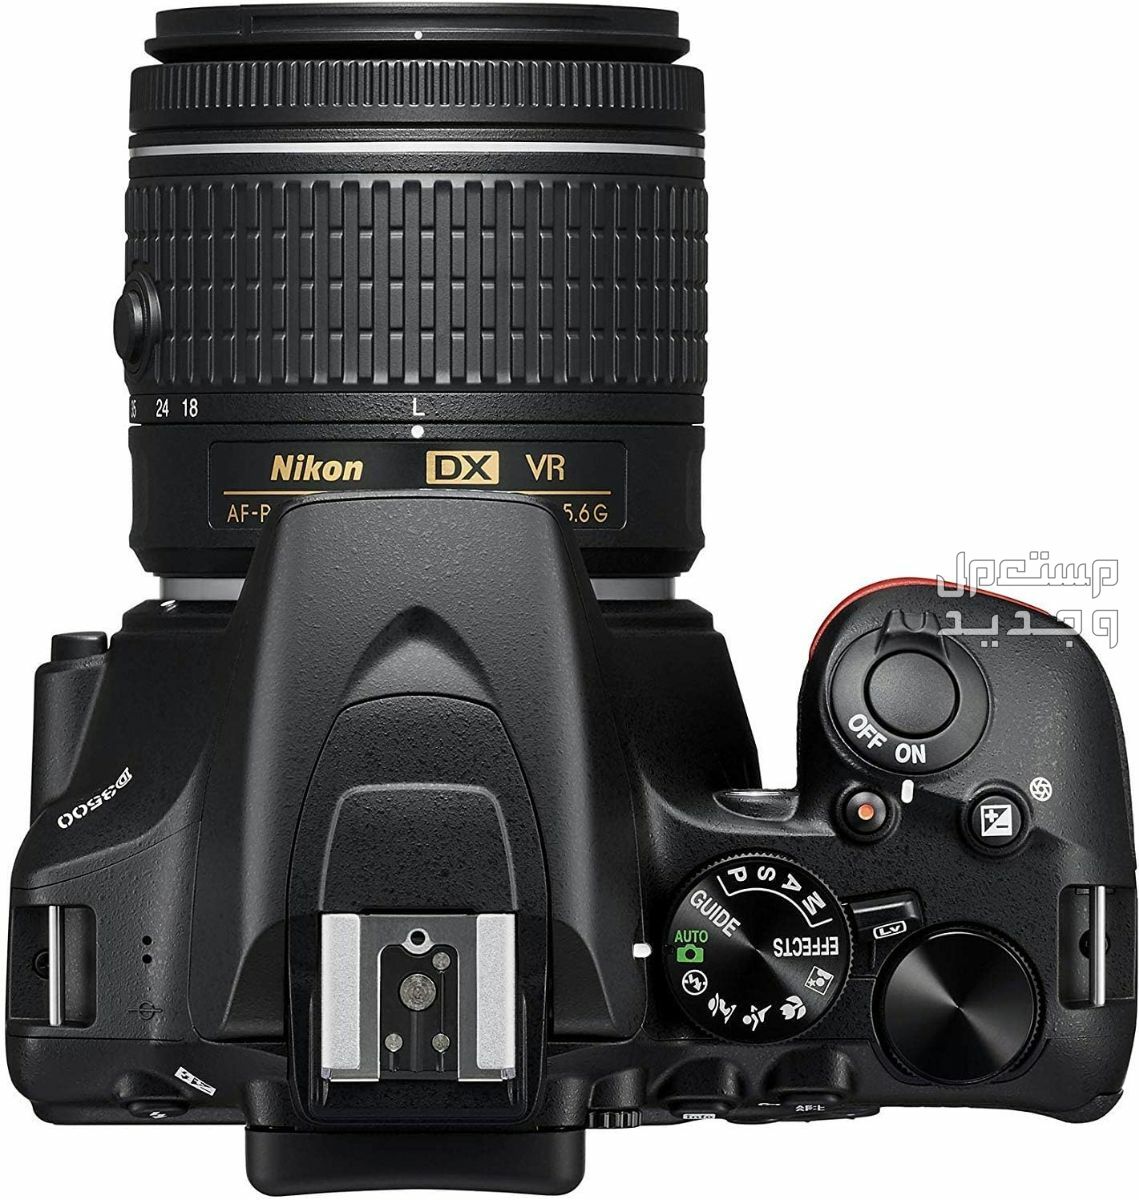 10 كاميرات تصوير ماركات عالمية بأسعار رخيصة في اليَمَن سعر كاميرا Nikon D3500